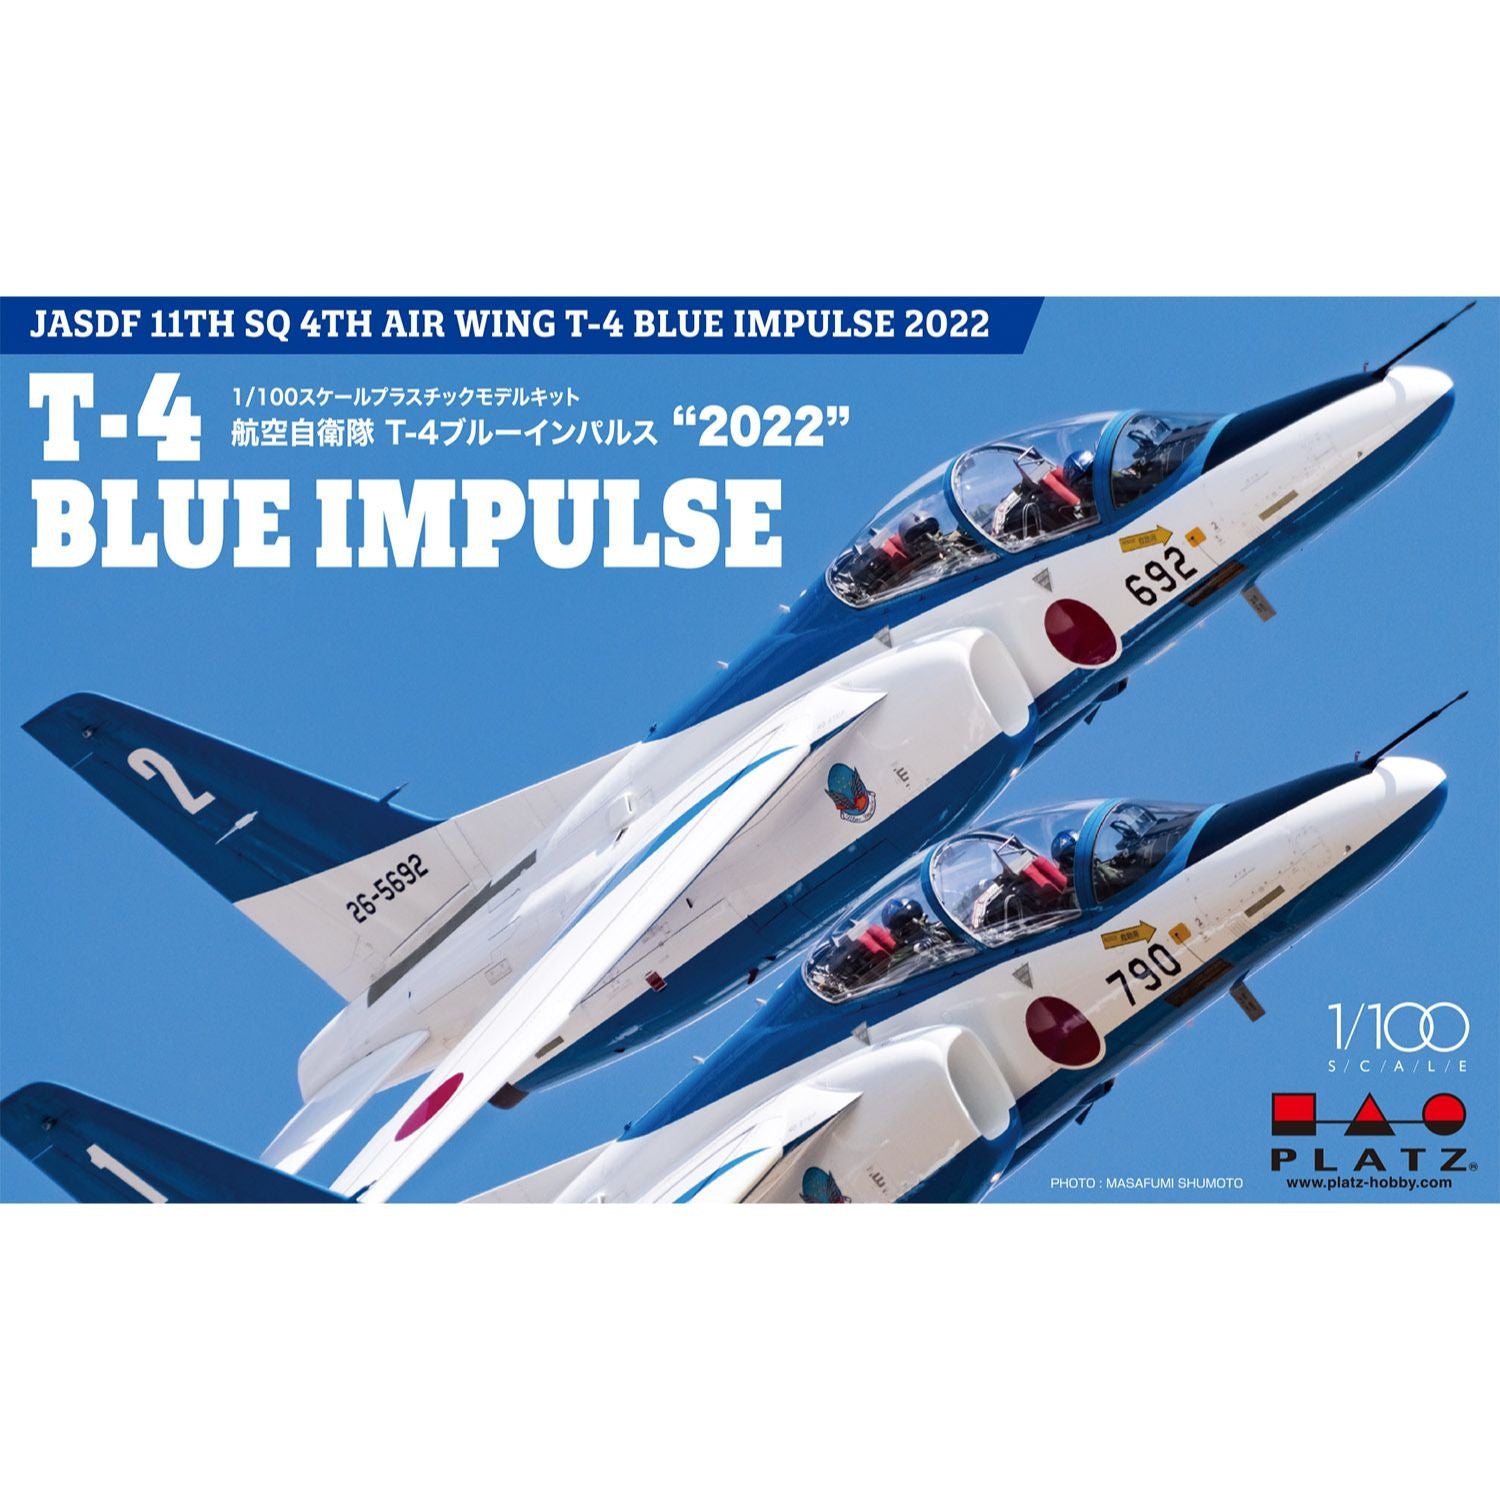 KB 航空自衛隊 第4航空団 第11飛行隊 T-4 ブルーインパルス 2013シーズン 6機セット 1/144 初回限定版 【Blue Impulse  LIMITED EDITION】 - ミニカー